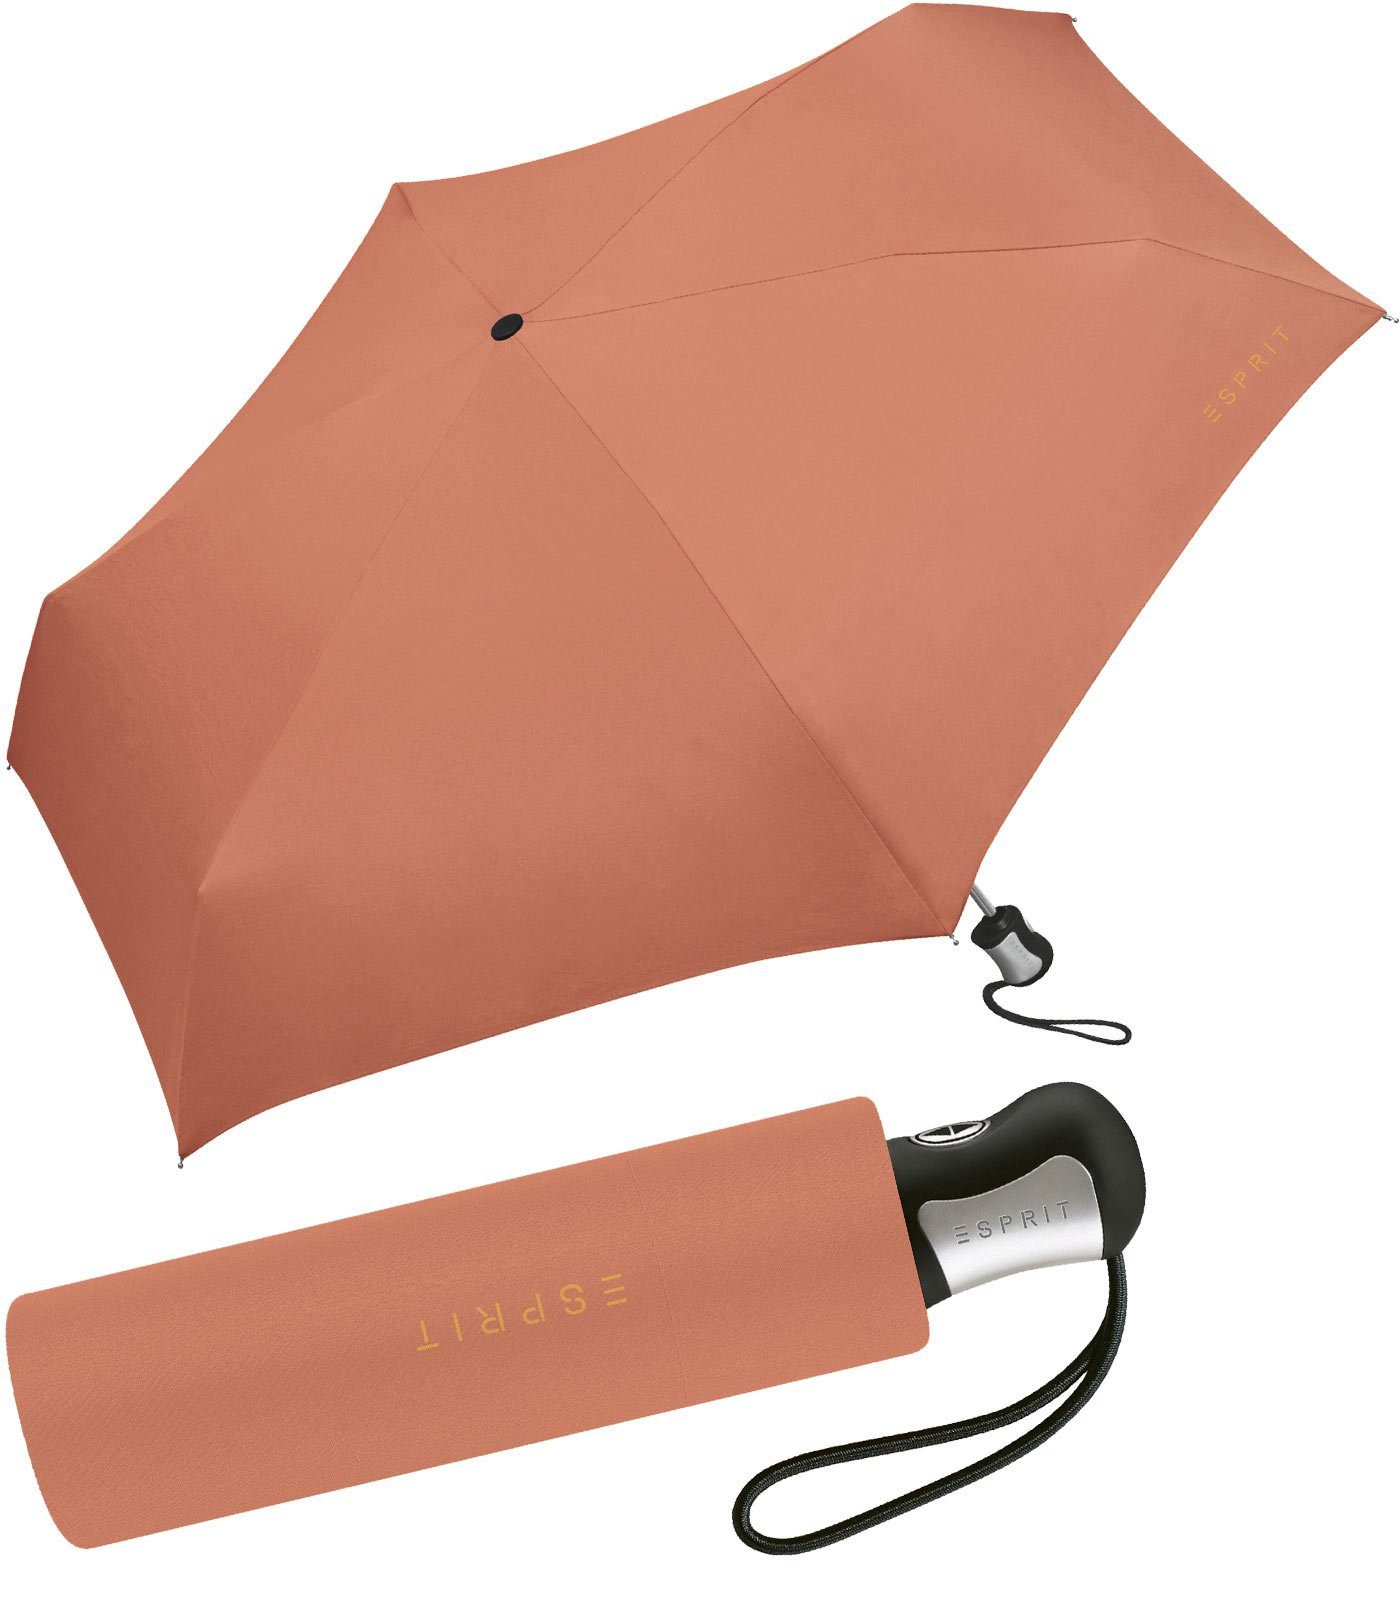 Automatik, Farben brandy kräftigen Damen Esprit Schirm kleiner Auf-Zu in - schöner, orange Taschenregenschirm apricot für